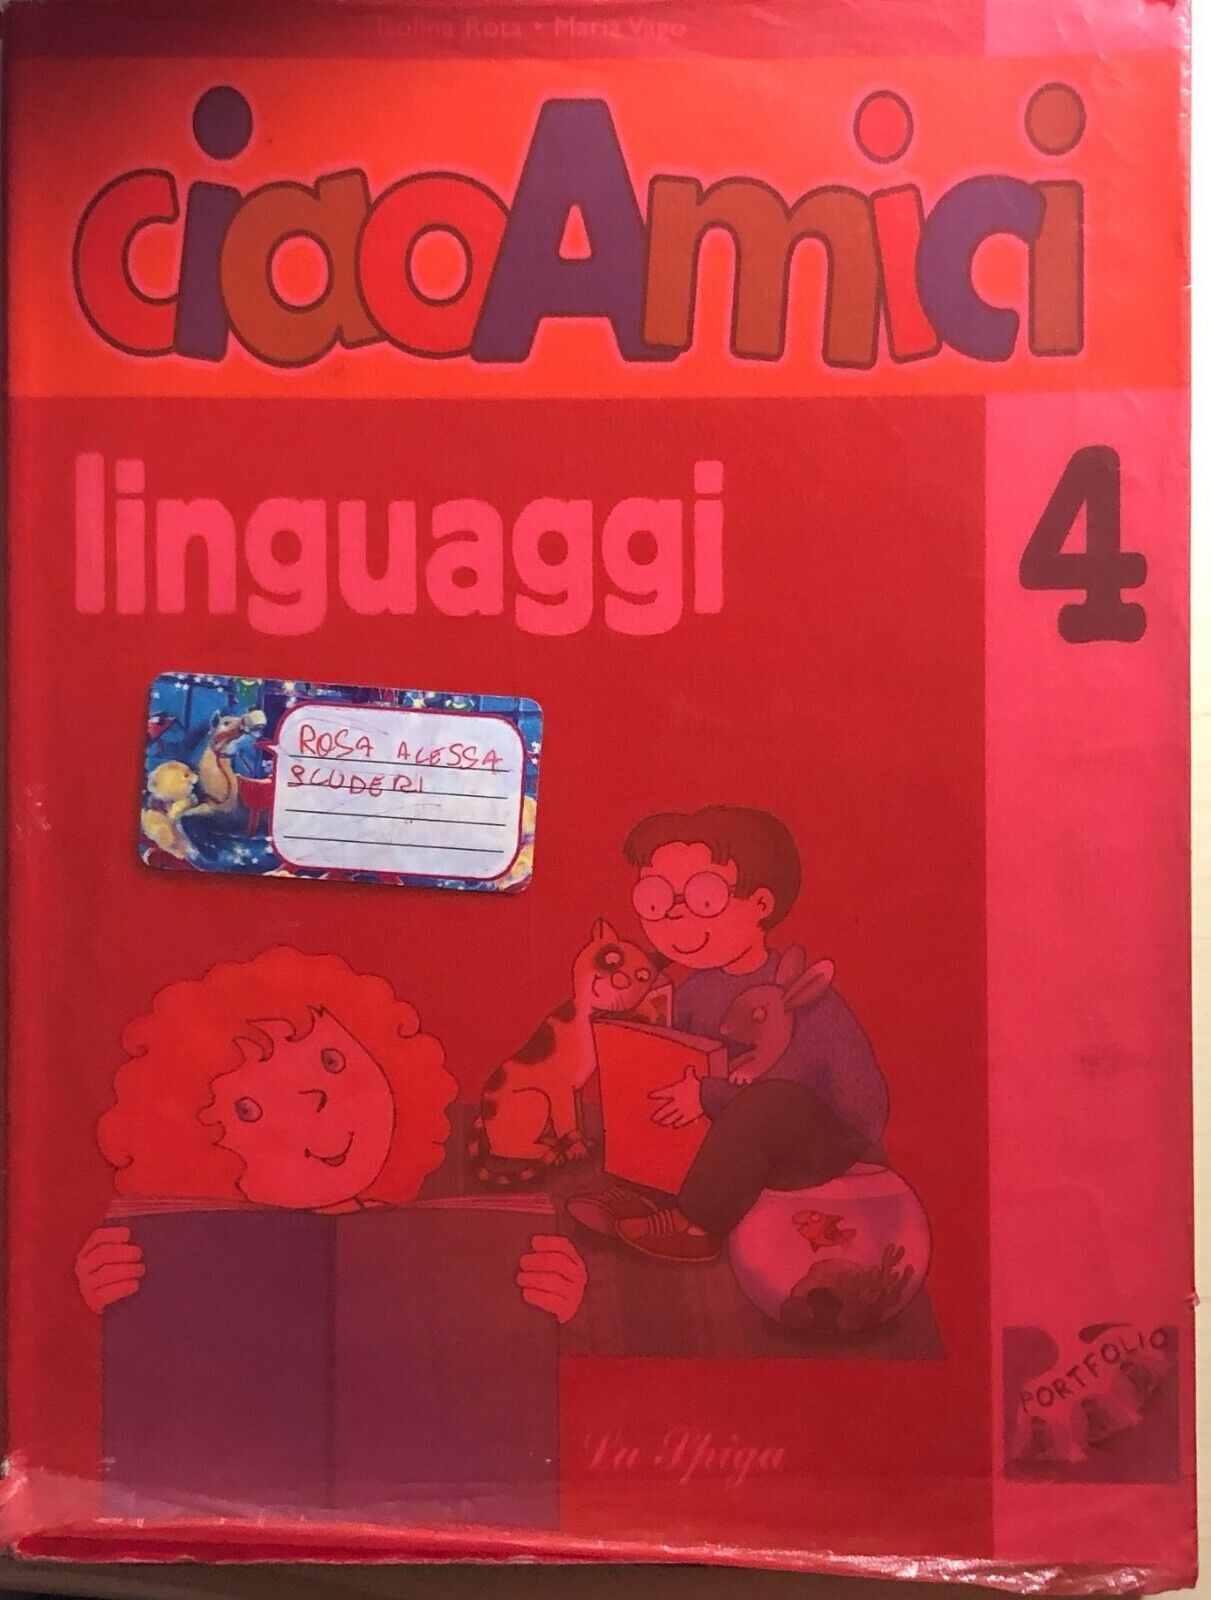 Ciao amici 4, linguaggi di AA.VV., 2006, La Spiga